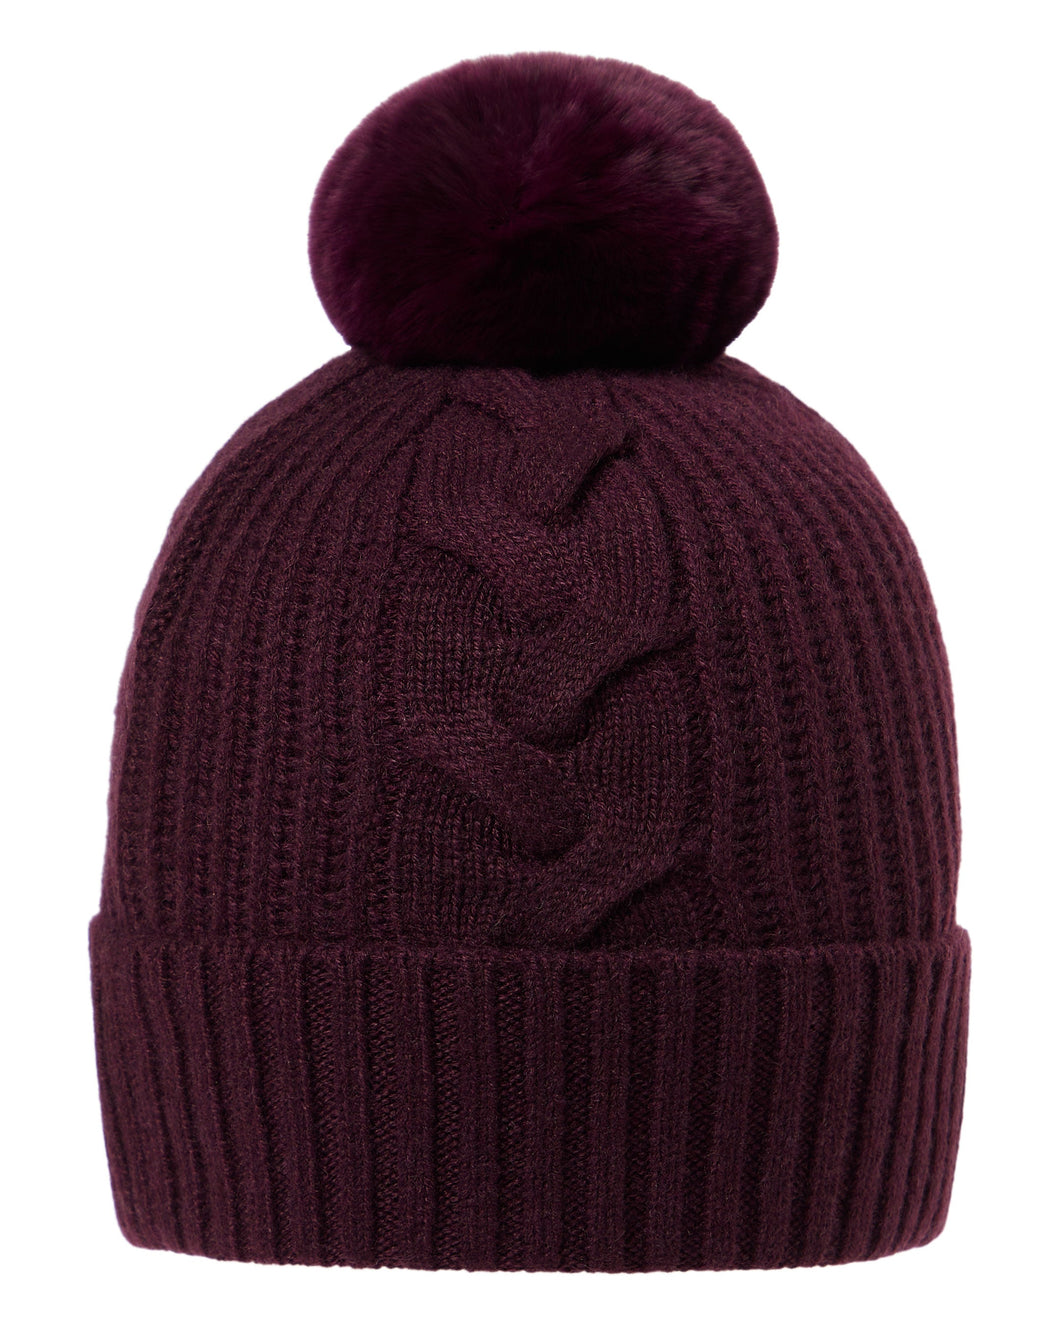 N.Peal Women's Fur Bobble Cable Hat Plum Purple